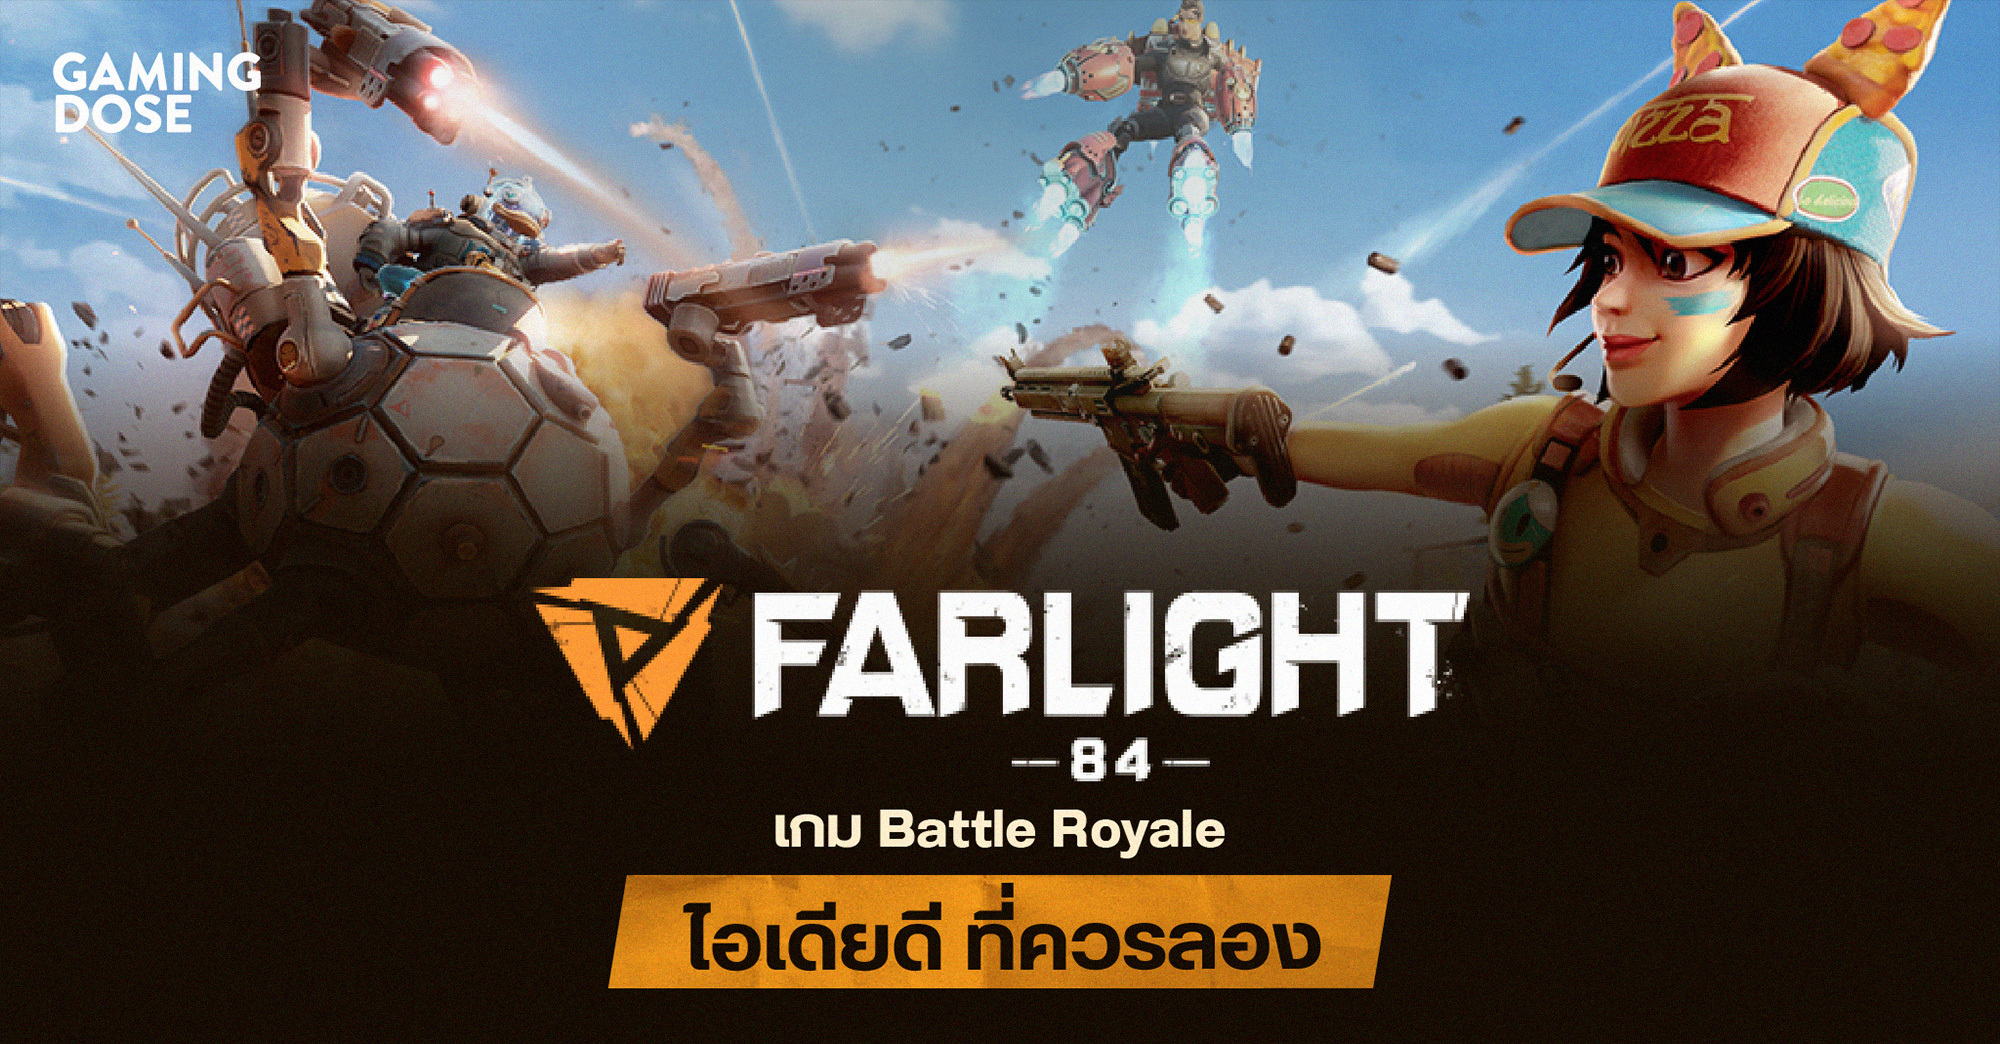 แนะนำ Farlight 84 เกม Battle Royale ไอเดียดี ที่ควรลอง